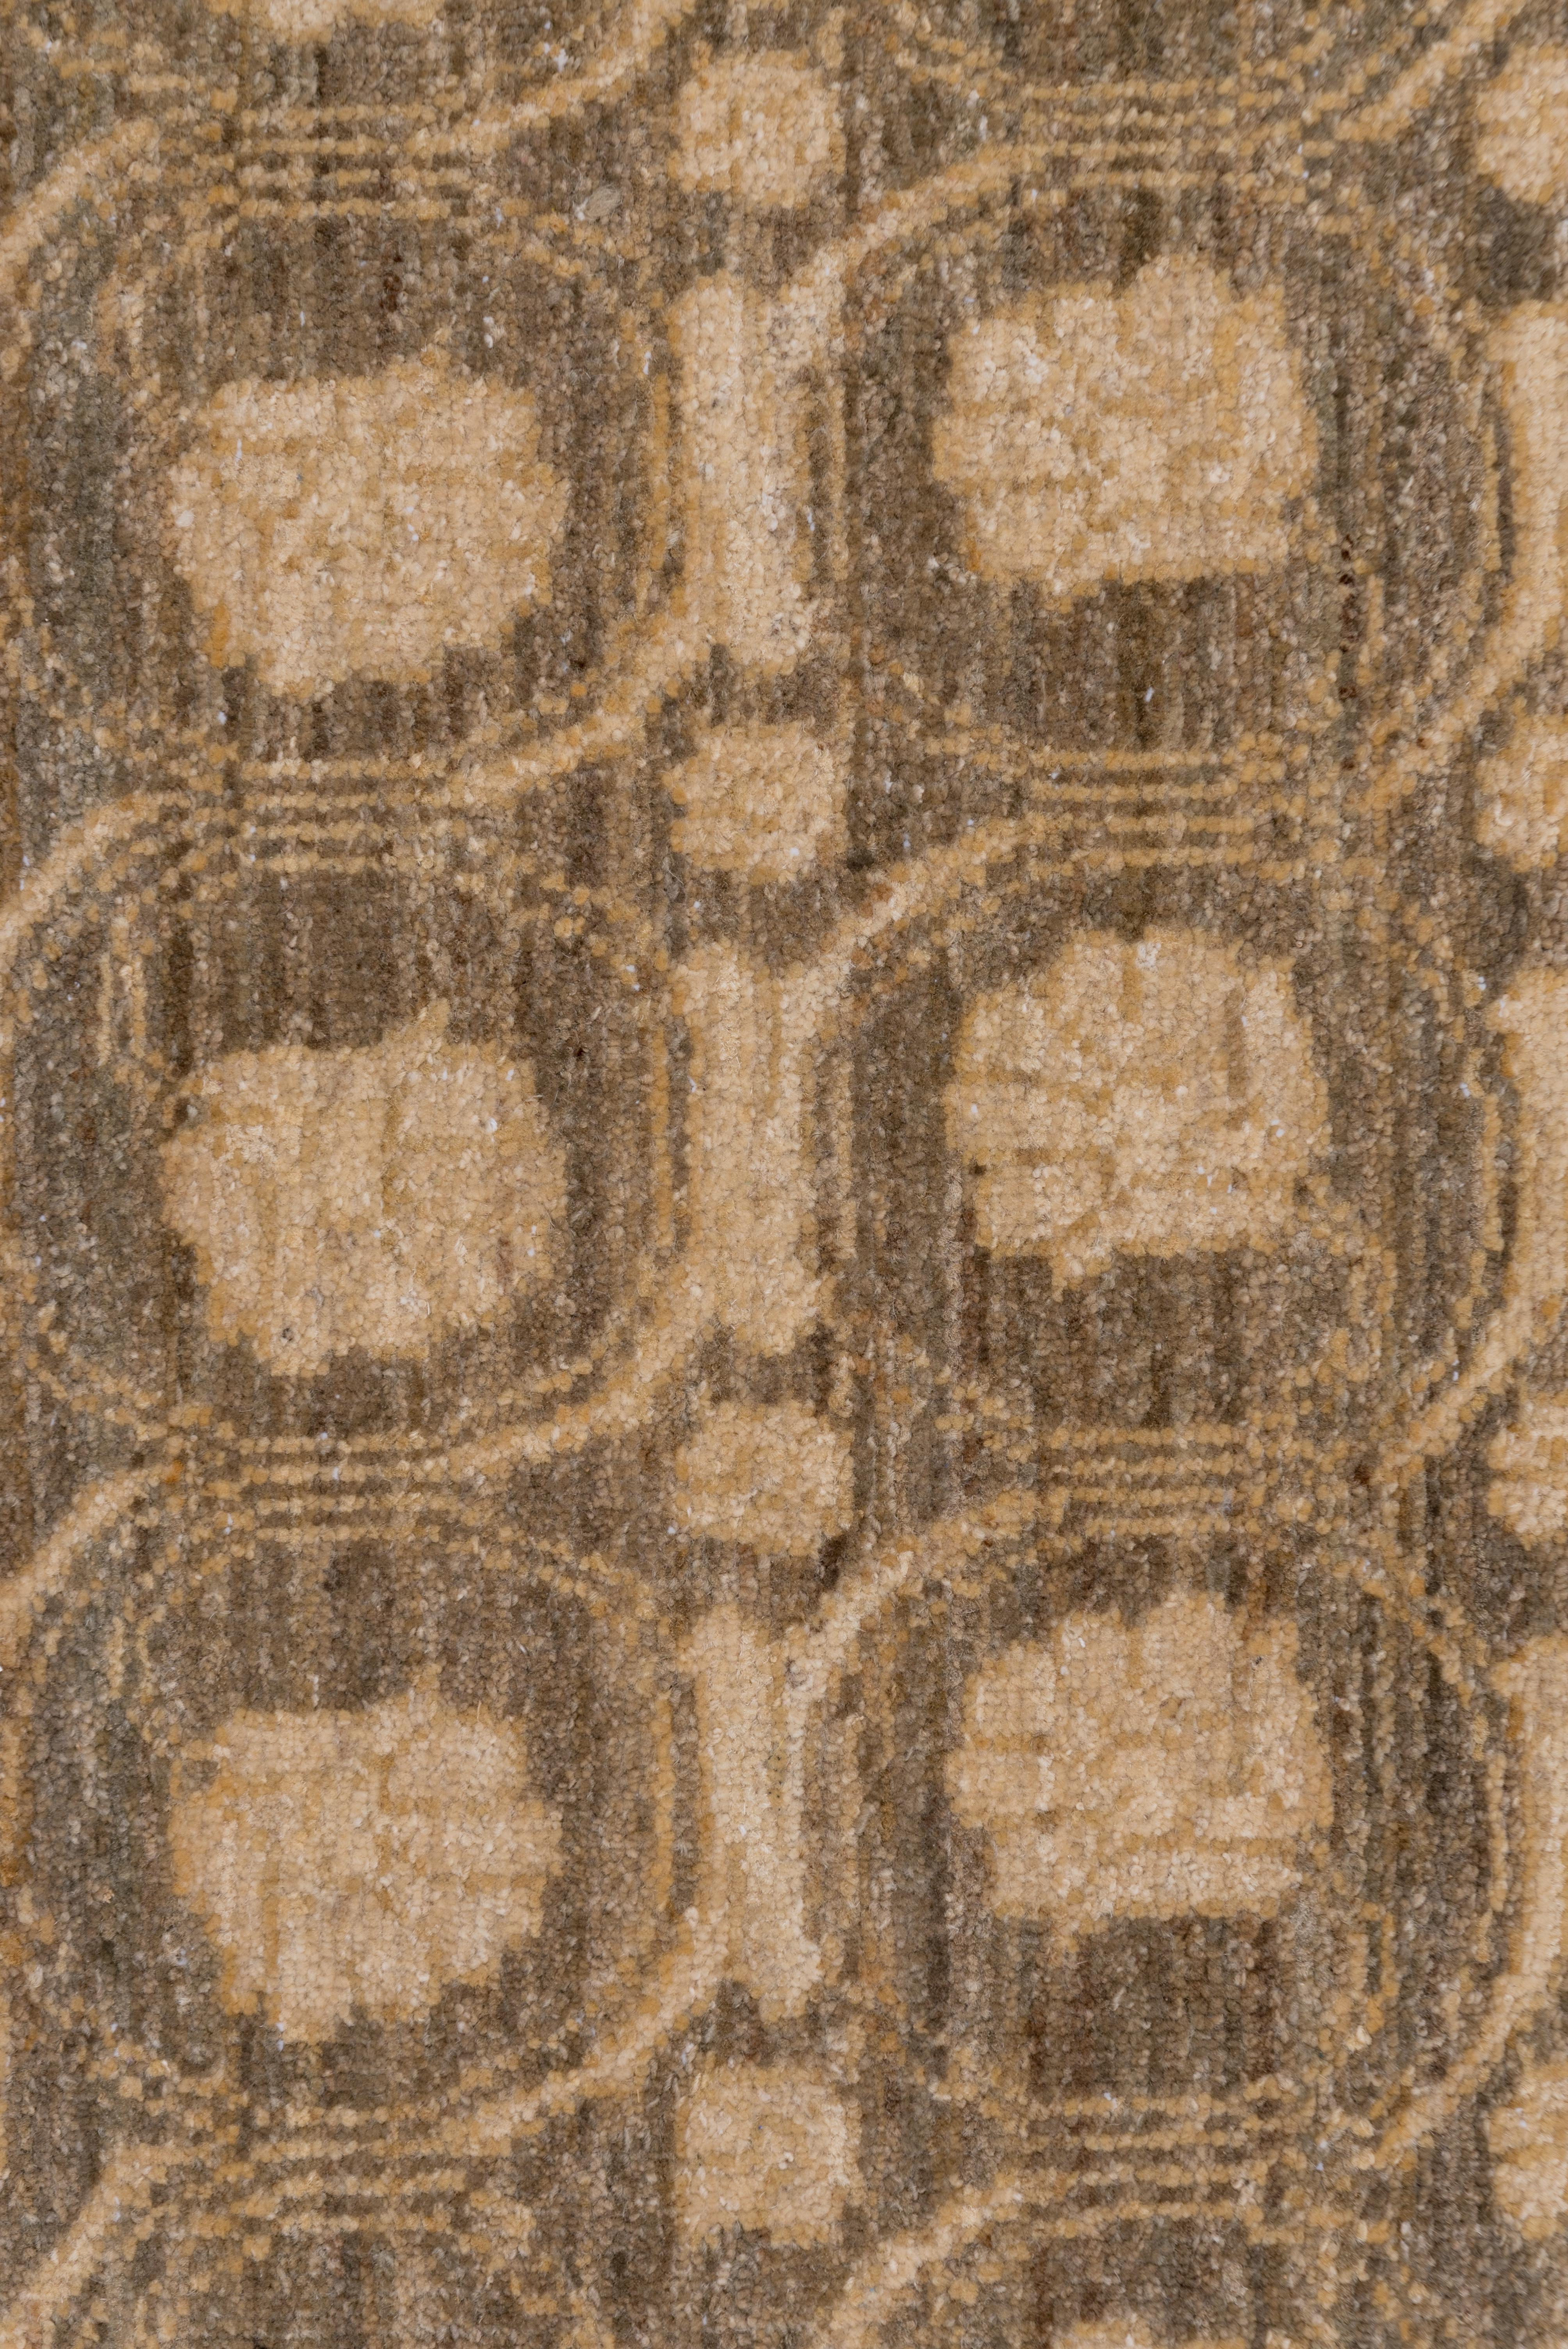 Pas de bordures, mais des rangées et des rangées, des colonnes et des colonnes de tiges arrondies entourant des fleurs de couleur beige et vermeil, sur le sol siennois densément abrasé de ce tapis d'origine afghane de style Sivas. Entre les deux se